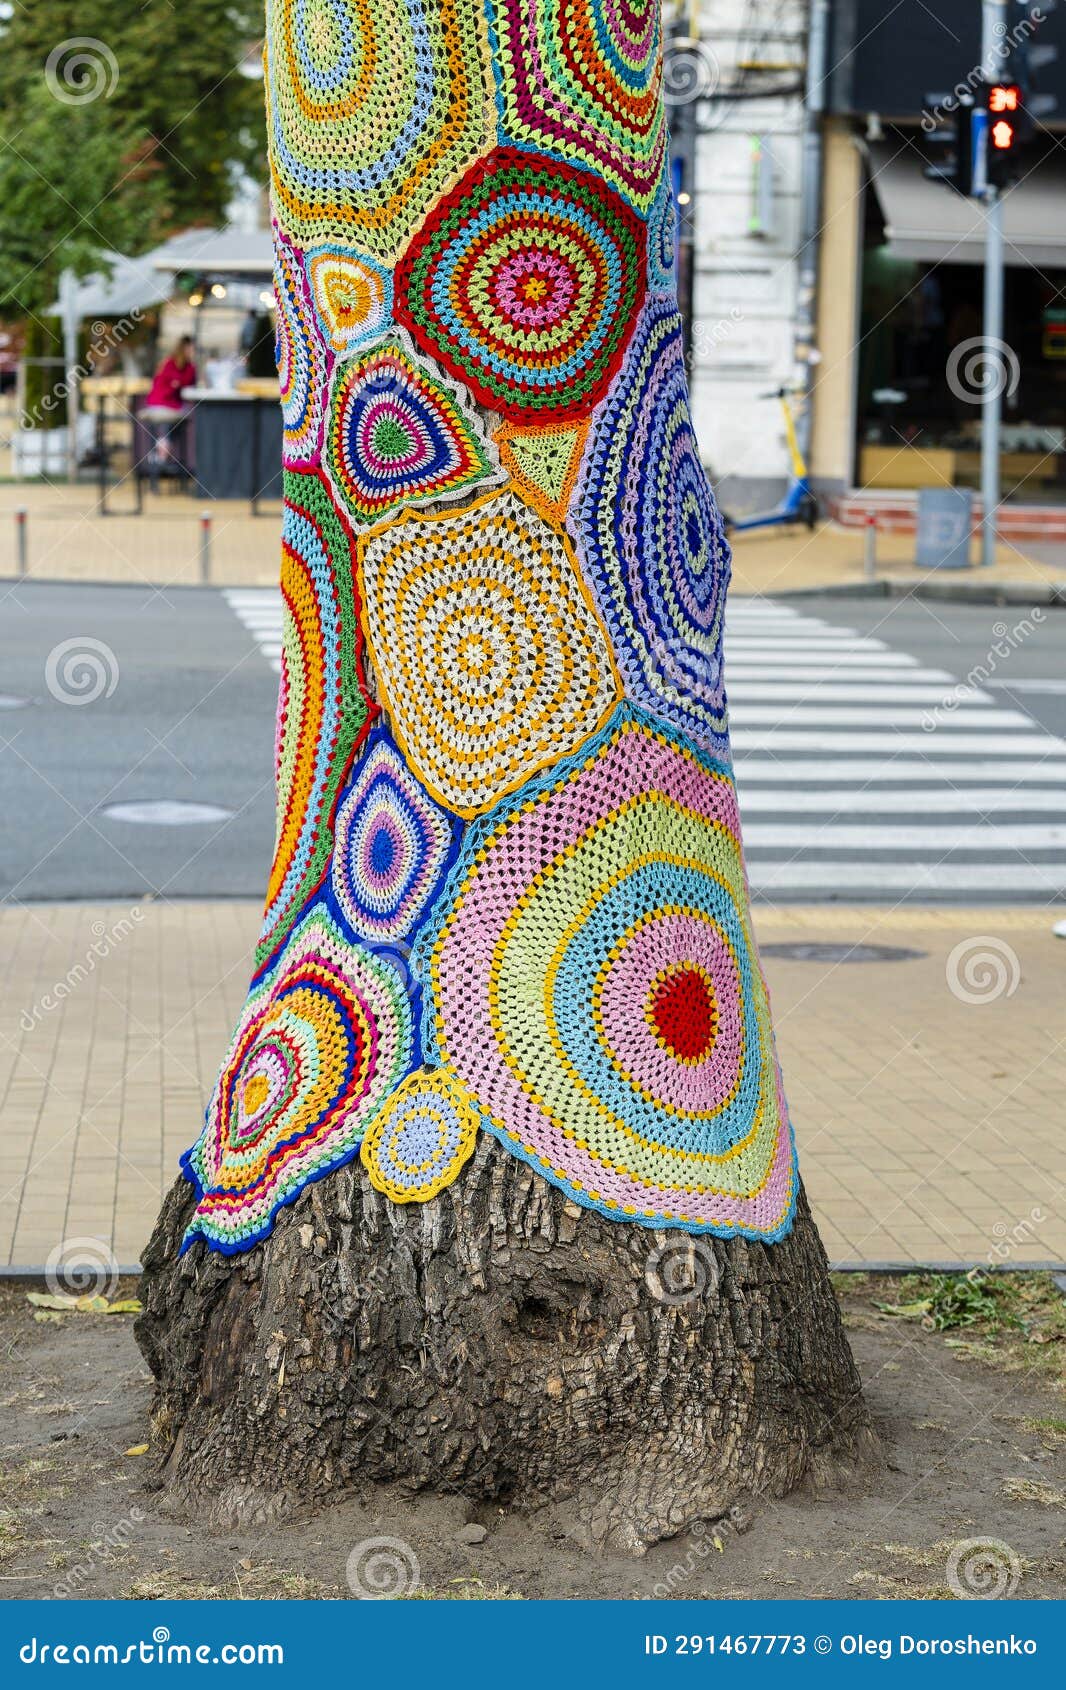 Colorful Crochet Knit on Tree Trunk in Kyiv, Ukraine. Street Art